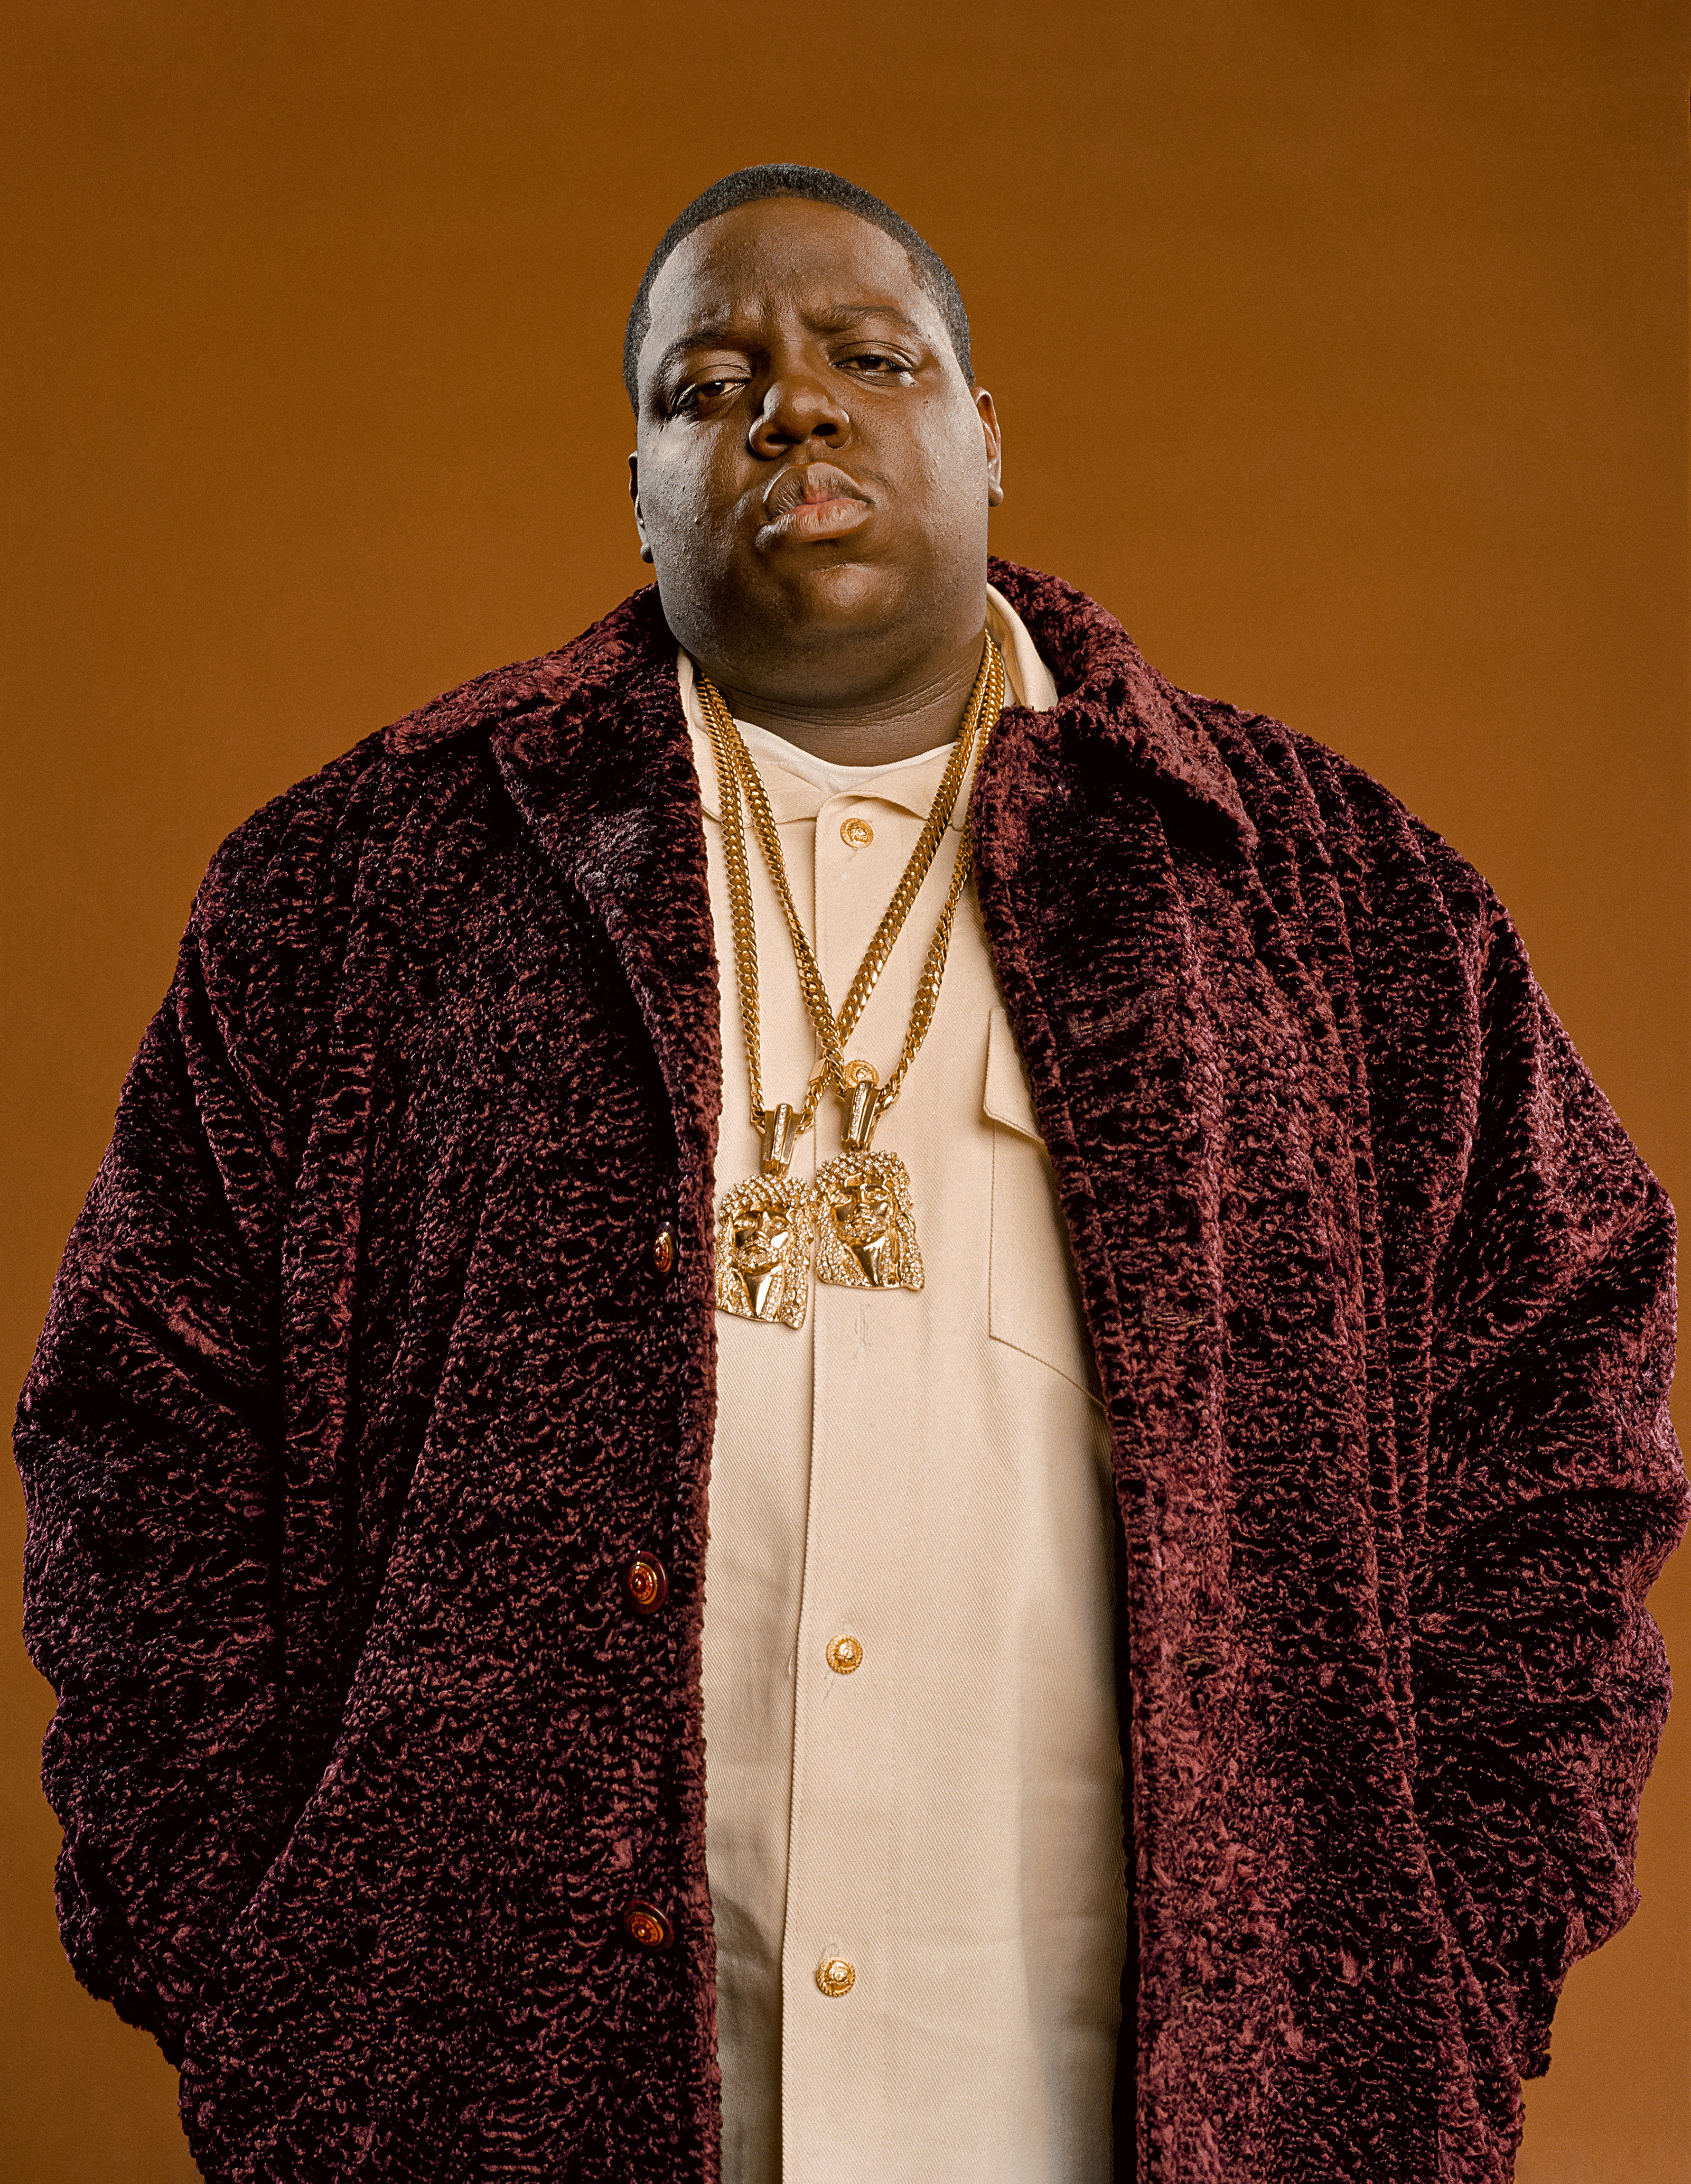 Der Rapper Notorious B.I.G. steht vor einem braunen Hintergrund. Er trägt zwei Jesus-Ketten und eine bordeauxfarbene Jacke. Er schaut in die Kamera